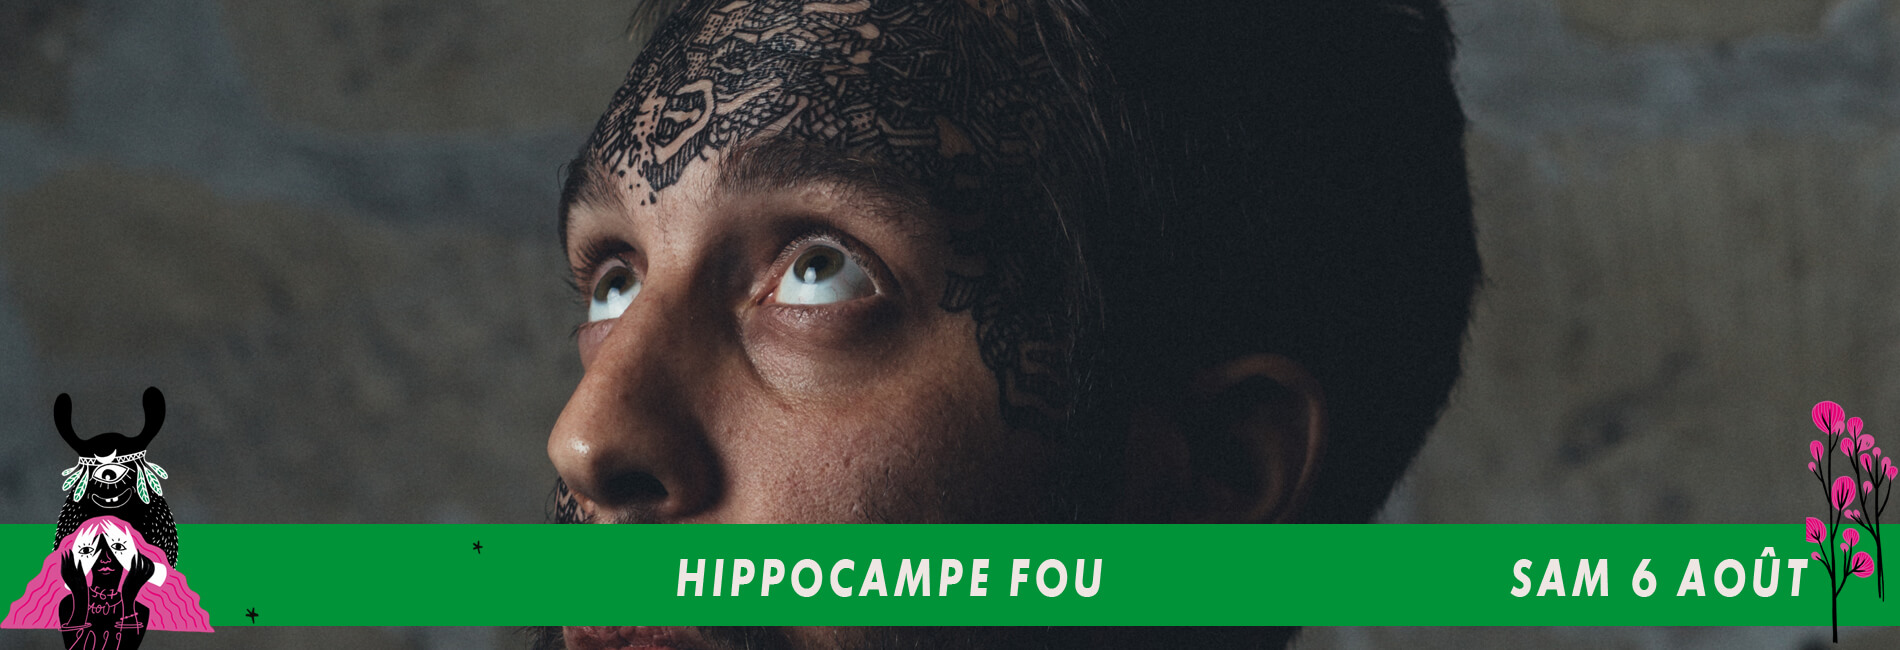 HIPPOCAMPE FOU